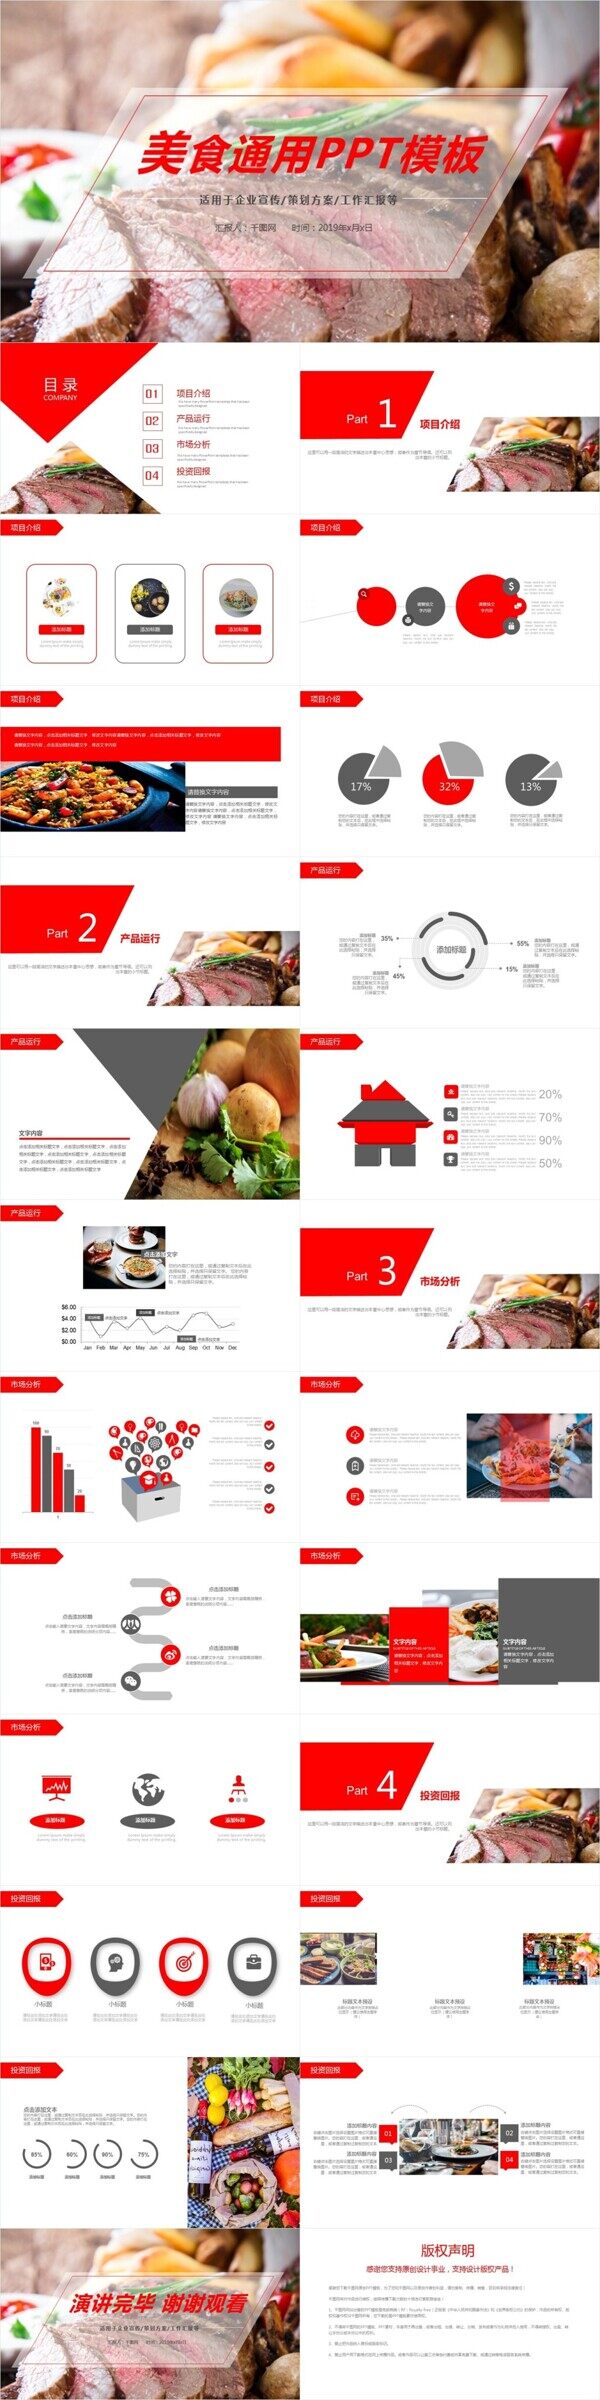 餐饮美食烤肉宣传介绍PPT动态模板